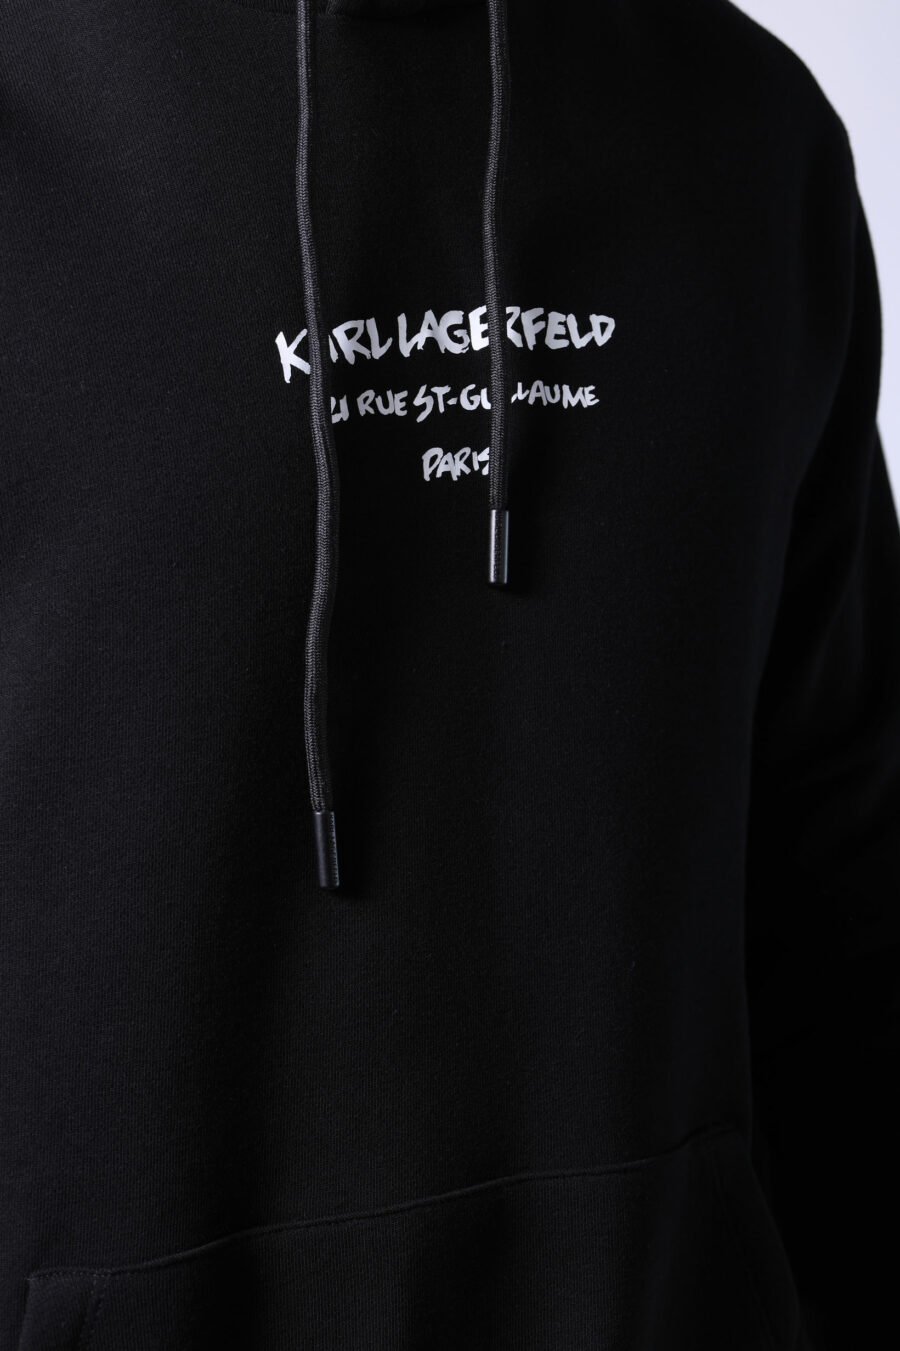 Schwarzes Sweatshirt mit Kapuze und Logo "rue st guillaume" - Untitled Catalog 05749